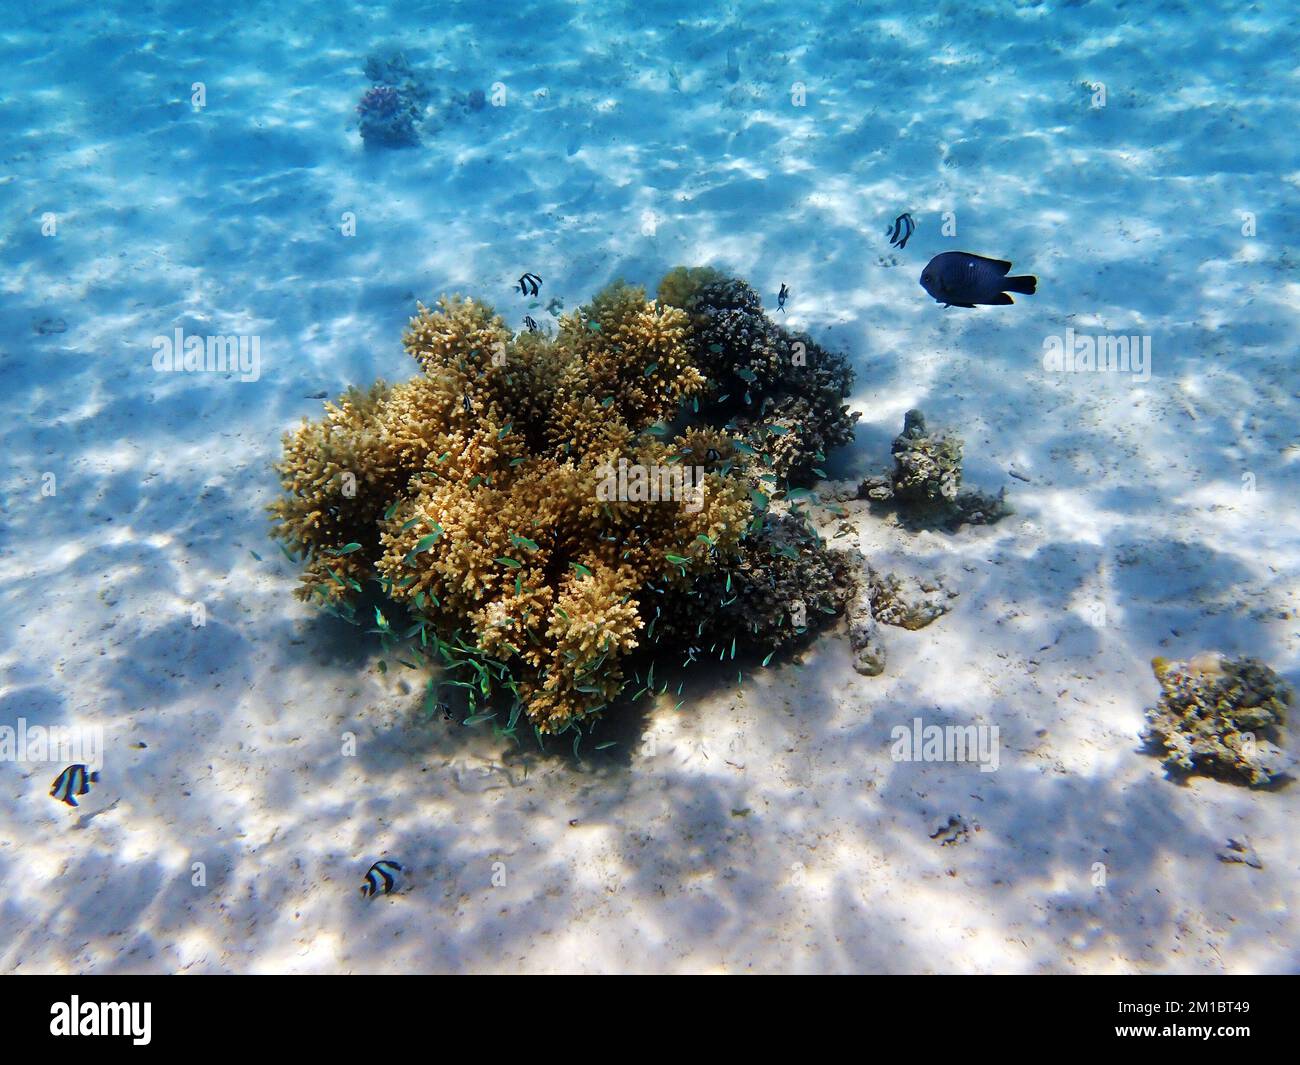 Rêve sous-marin corail paysage marin dans la mer Rouge Banque D'Images